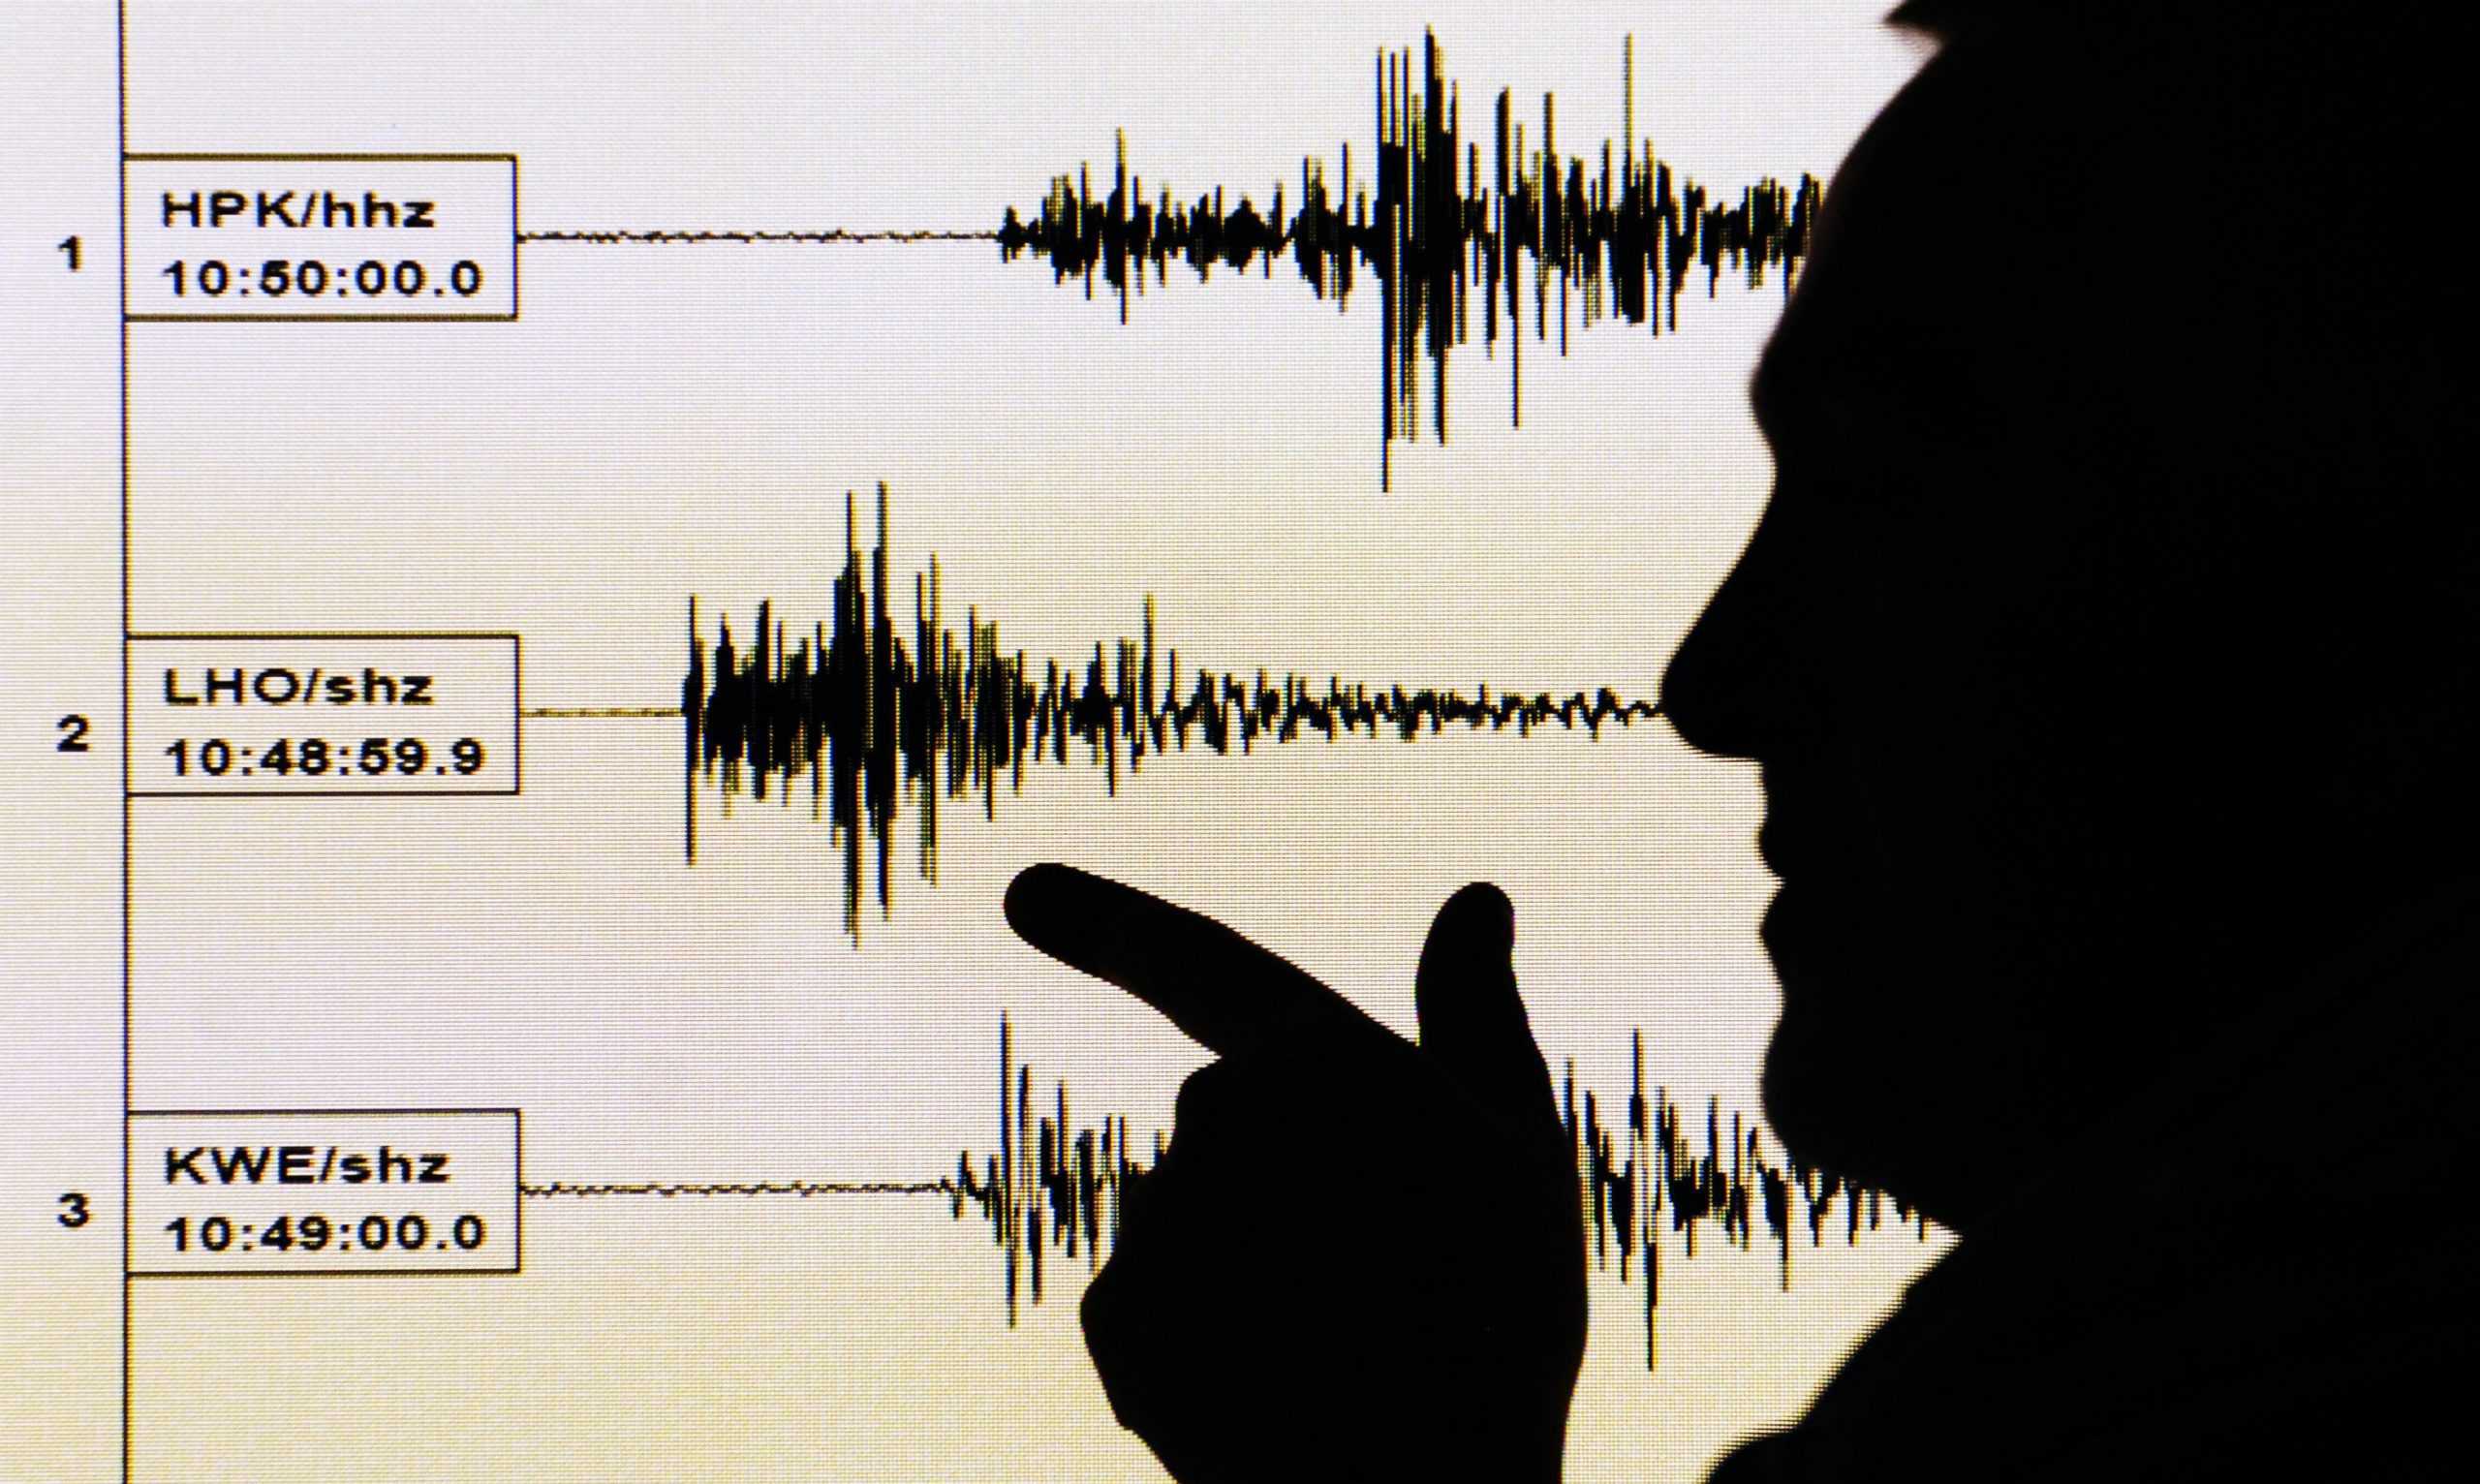 Panic as earthquake ‘violently’ shakes homes across England